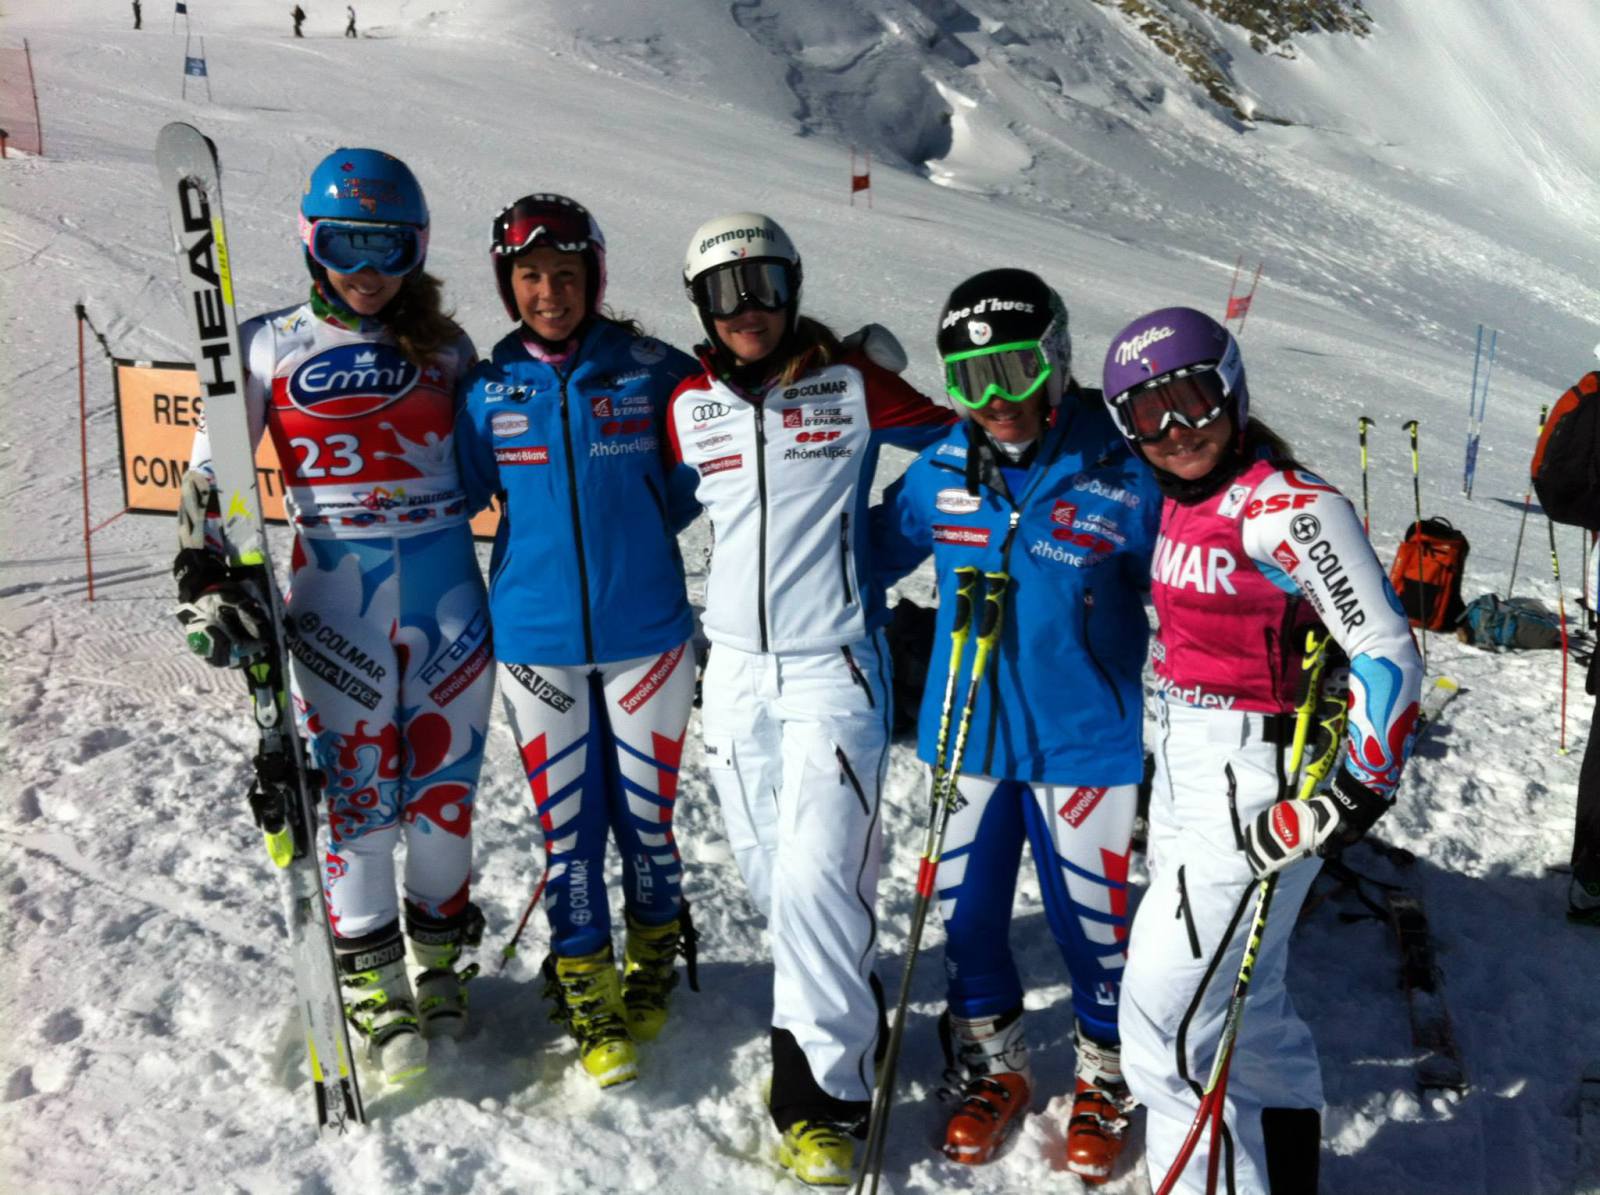 A francia női csapat: Anne-Sophie Barthet, Marion Bertrand, Taïna Barioz, Jennifer Piot és Tessa Worley (Kép: Fédération Française de Ski)